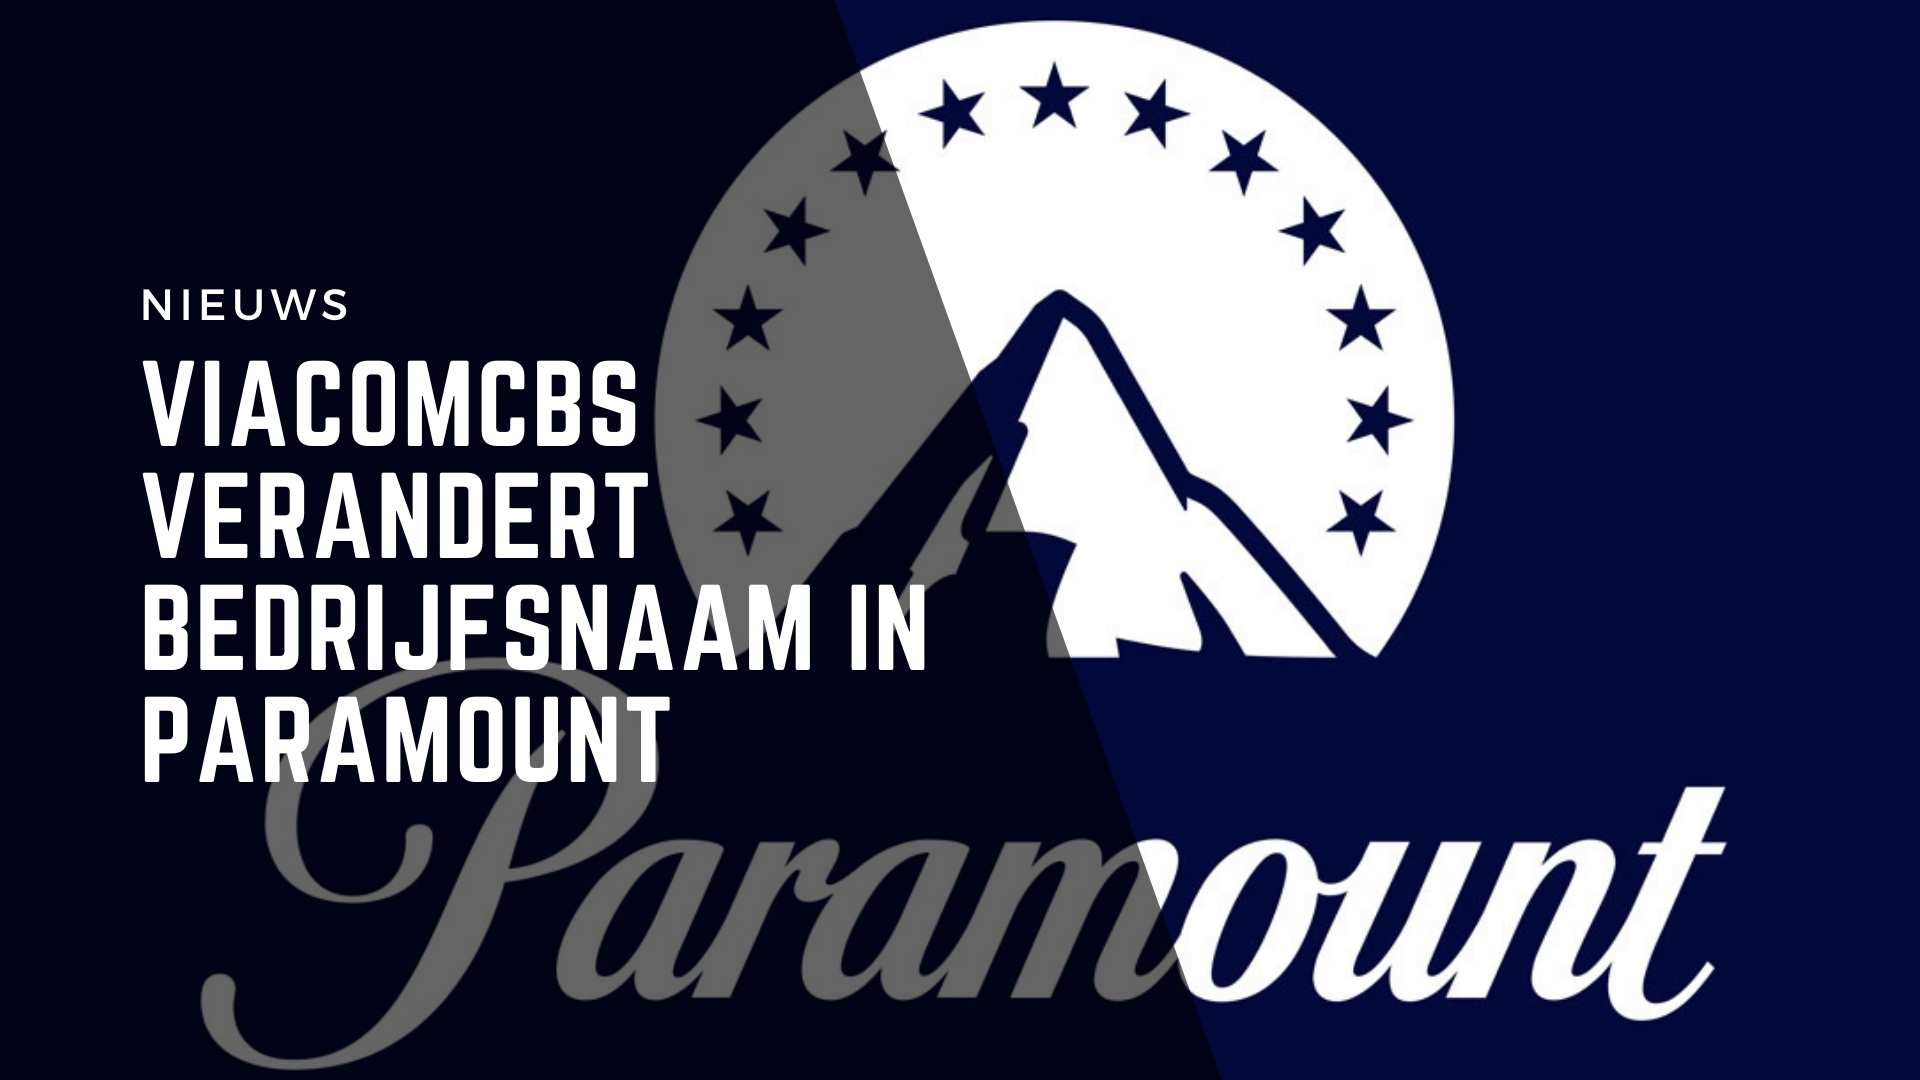 ViacomCBS verandert bedrijfsnaam in Paramount